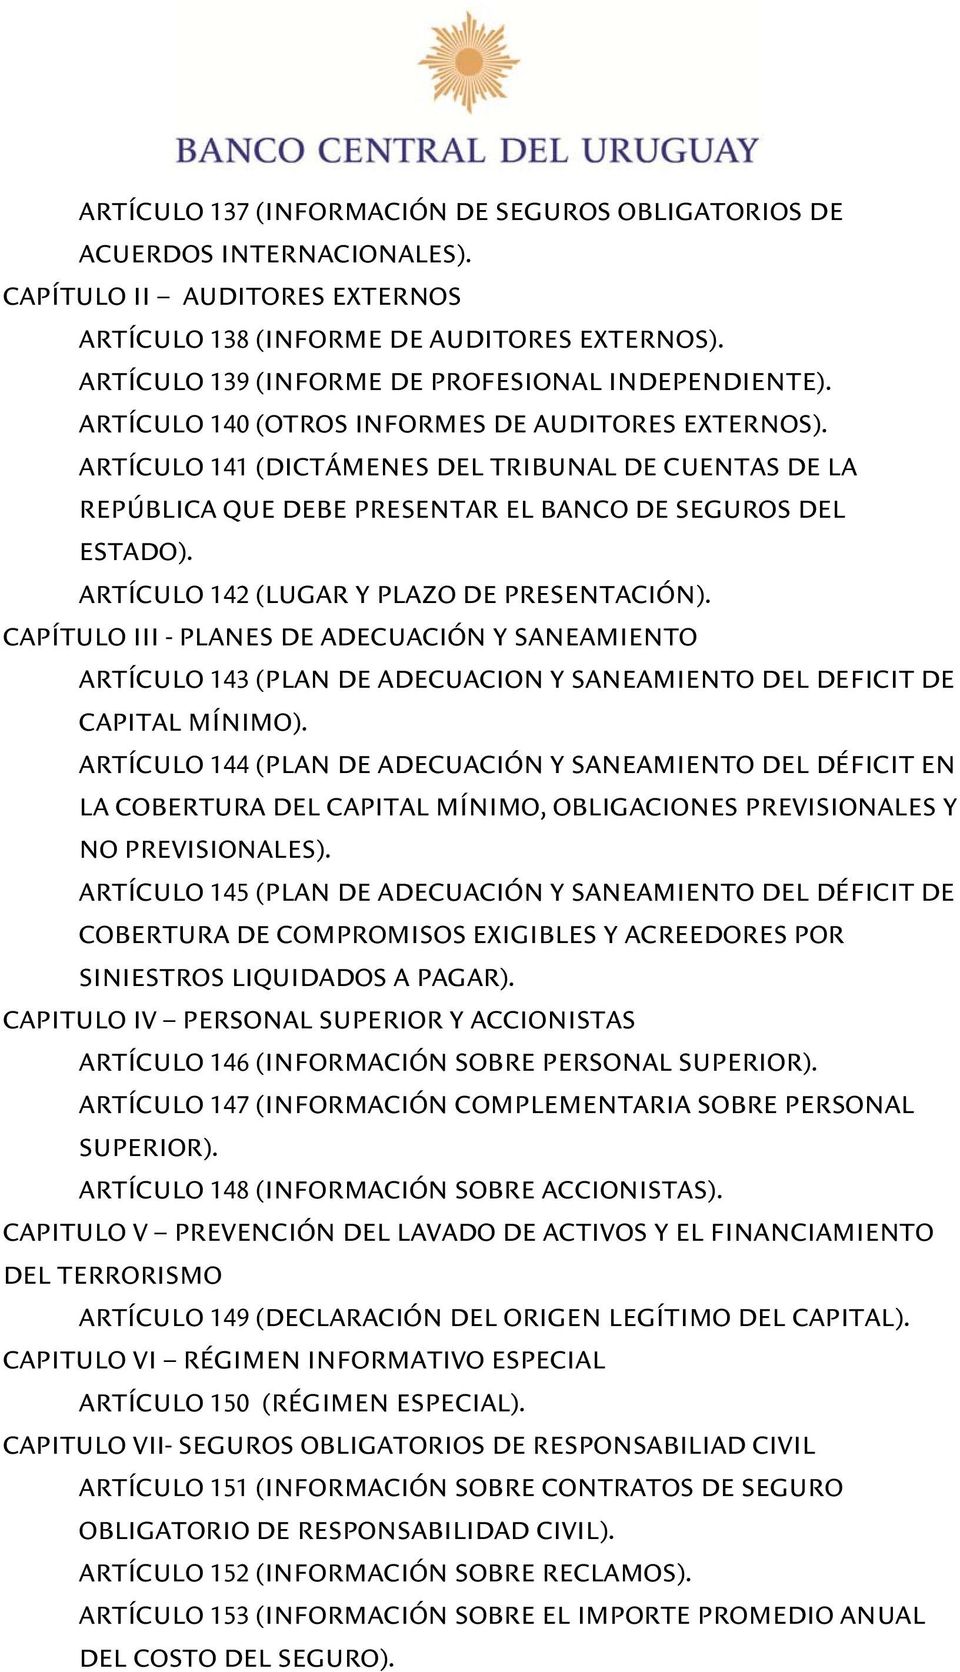 ARTÍCULO 141 (DICTÁMENES DEL TRIBUNAL DE CUENTAS DE LA REPÚBLICA QUE DEBE PRESENTAR EL BANCO DE SEGUROS DEL ESTADO). ARTÍCULO 142 (LUGAR Y PLAZO DE PRESENTACIÓN).